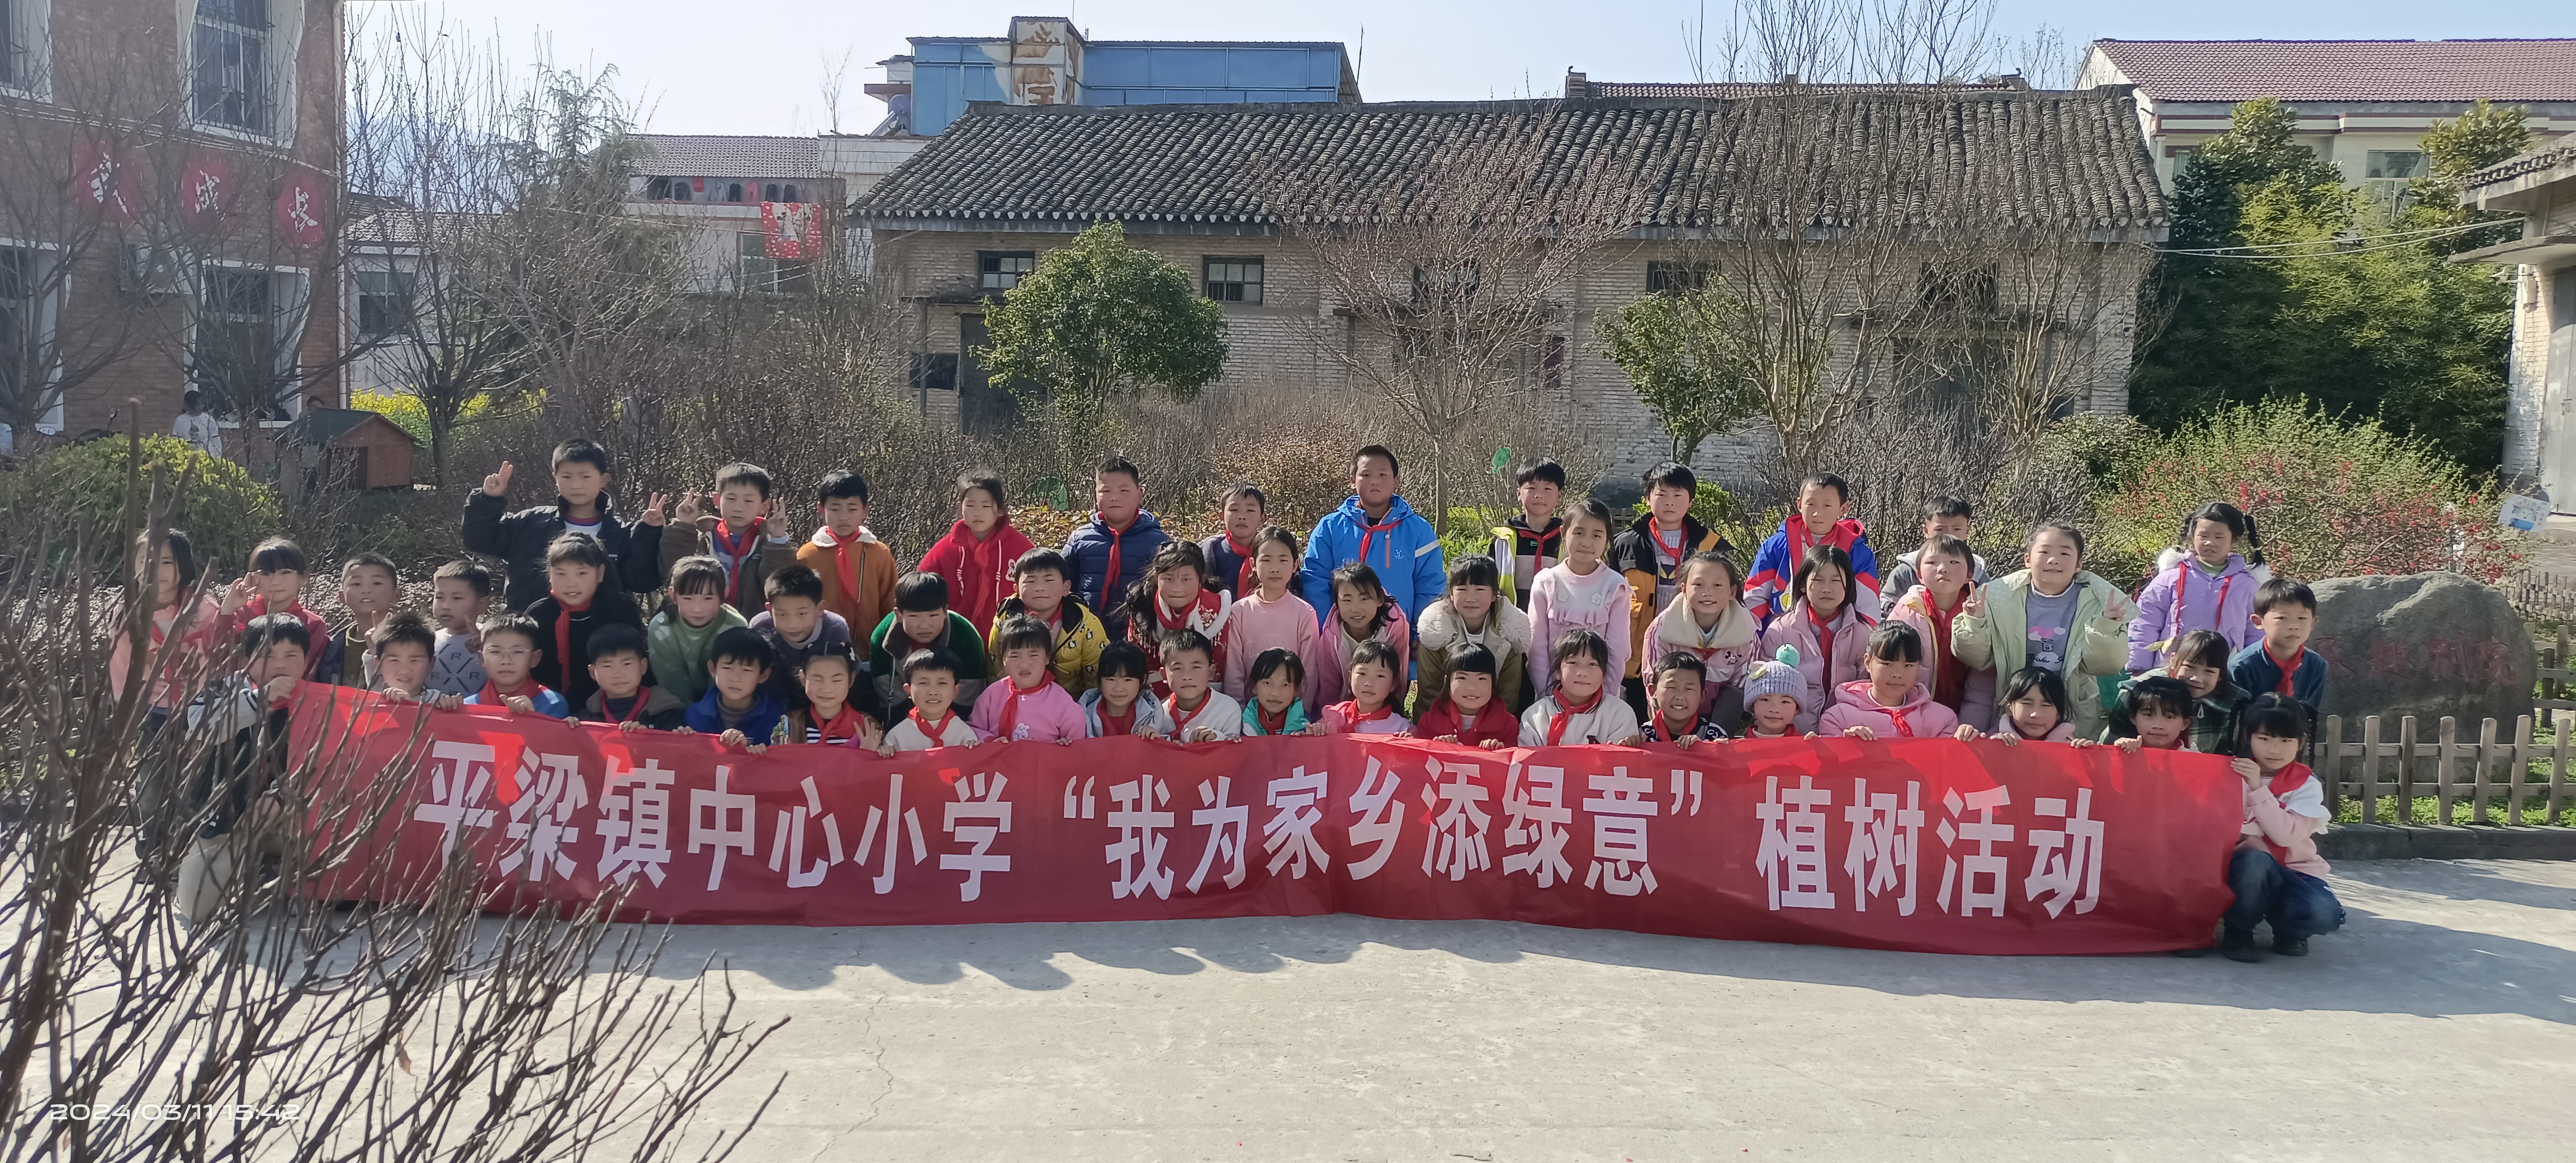 汉阴县平梁镇中心小学开展“我为家乡添绿意”校园植树活动